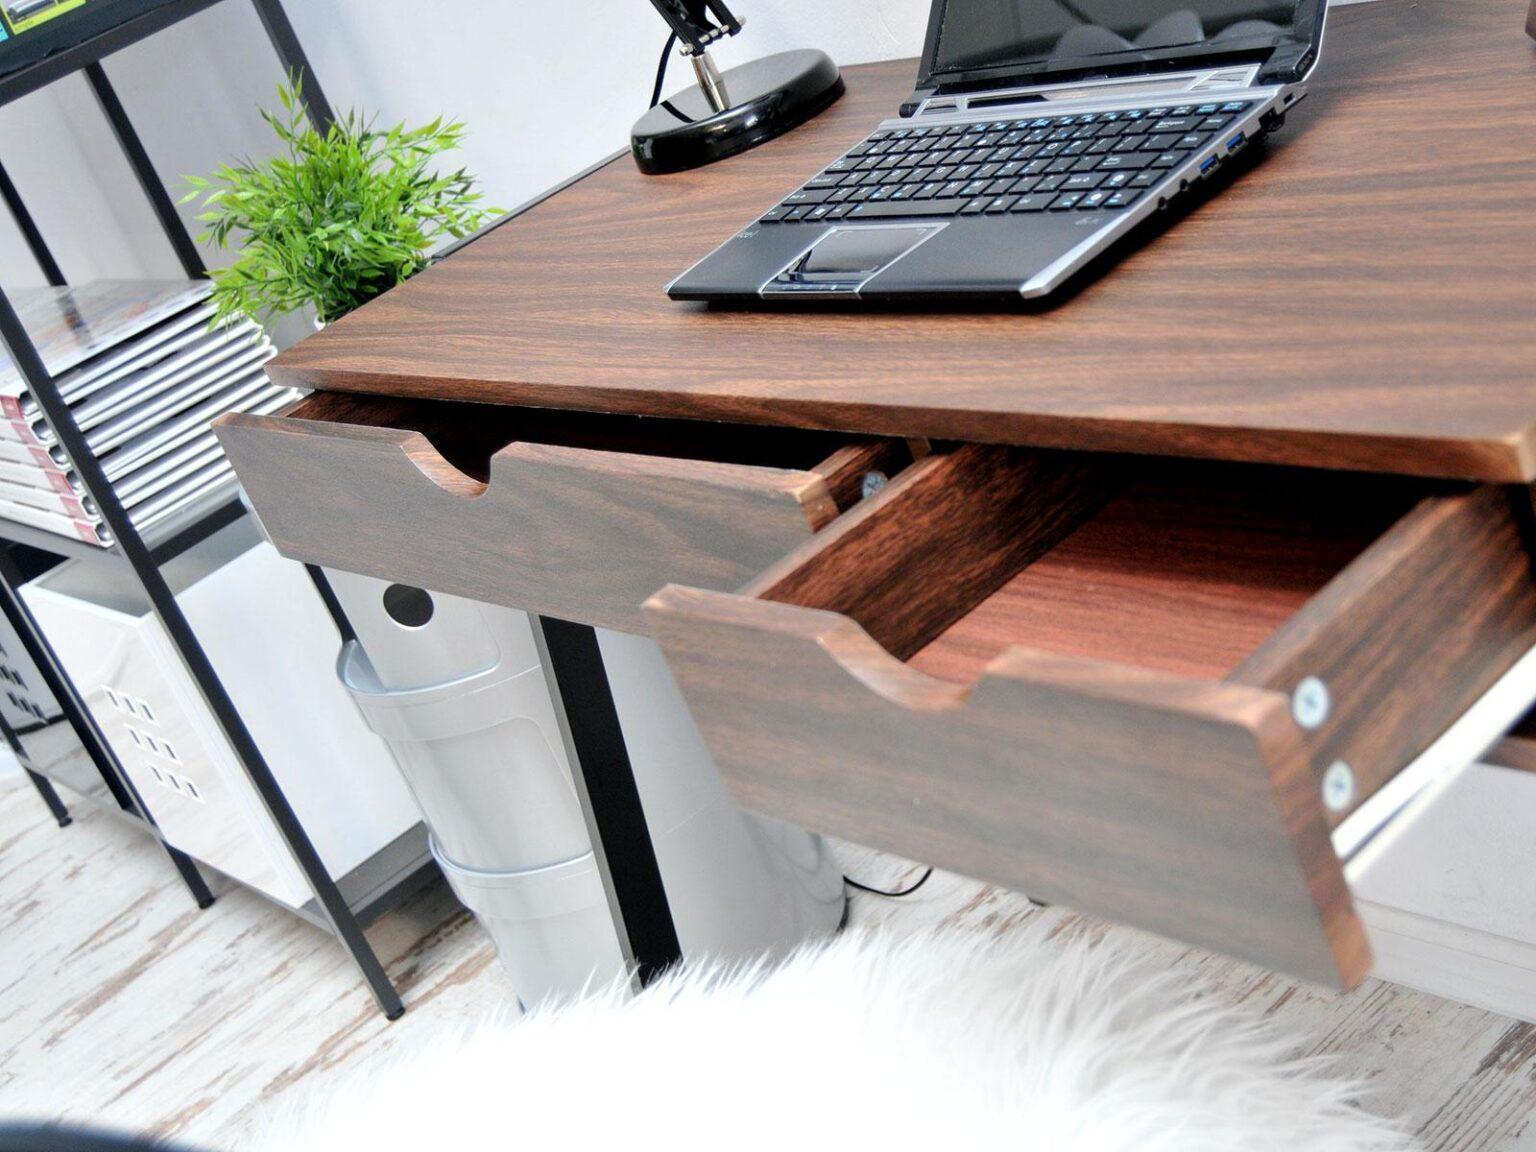 письменный стол с подножкой для ног